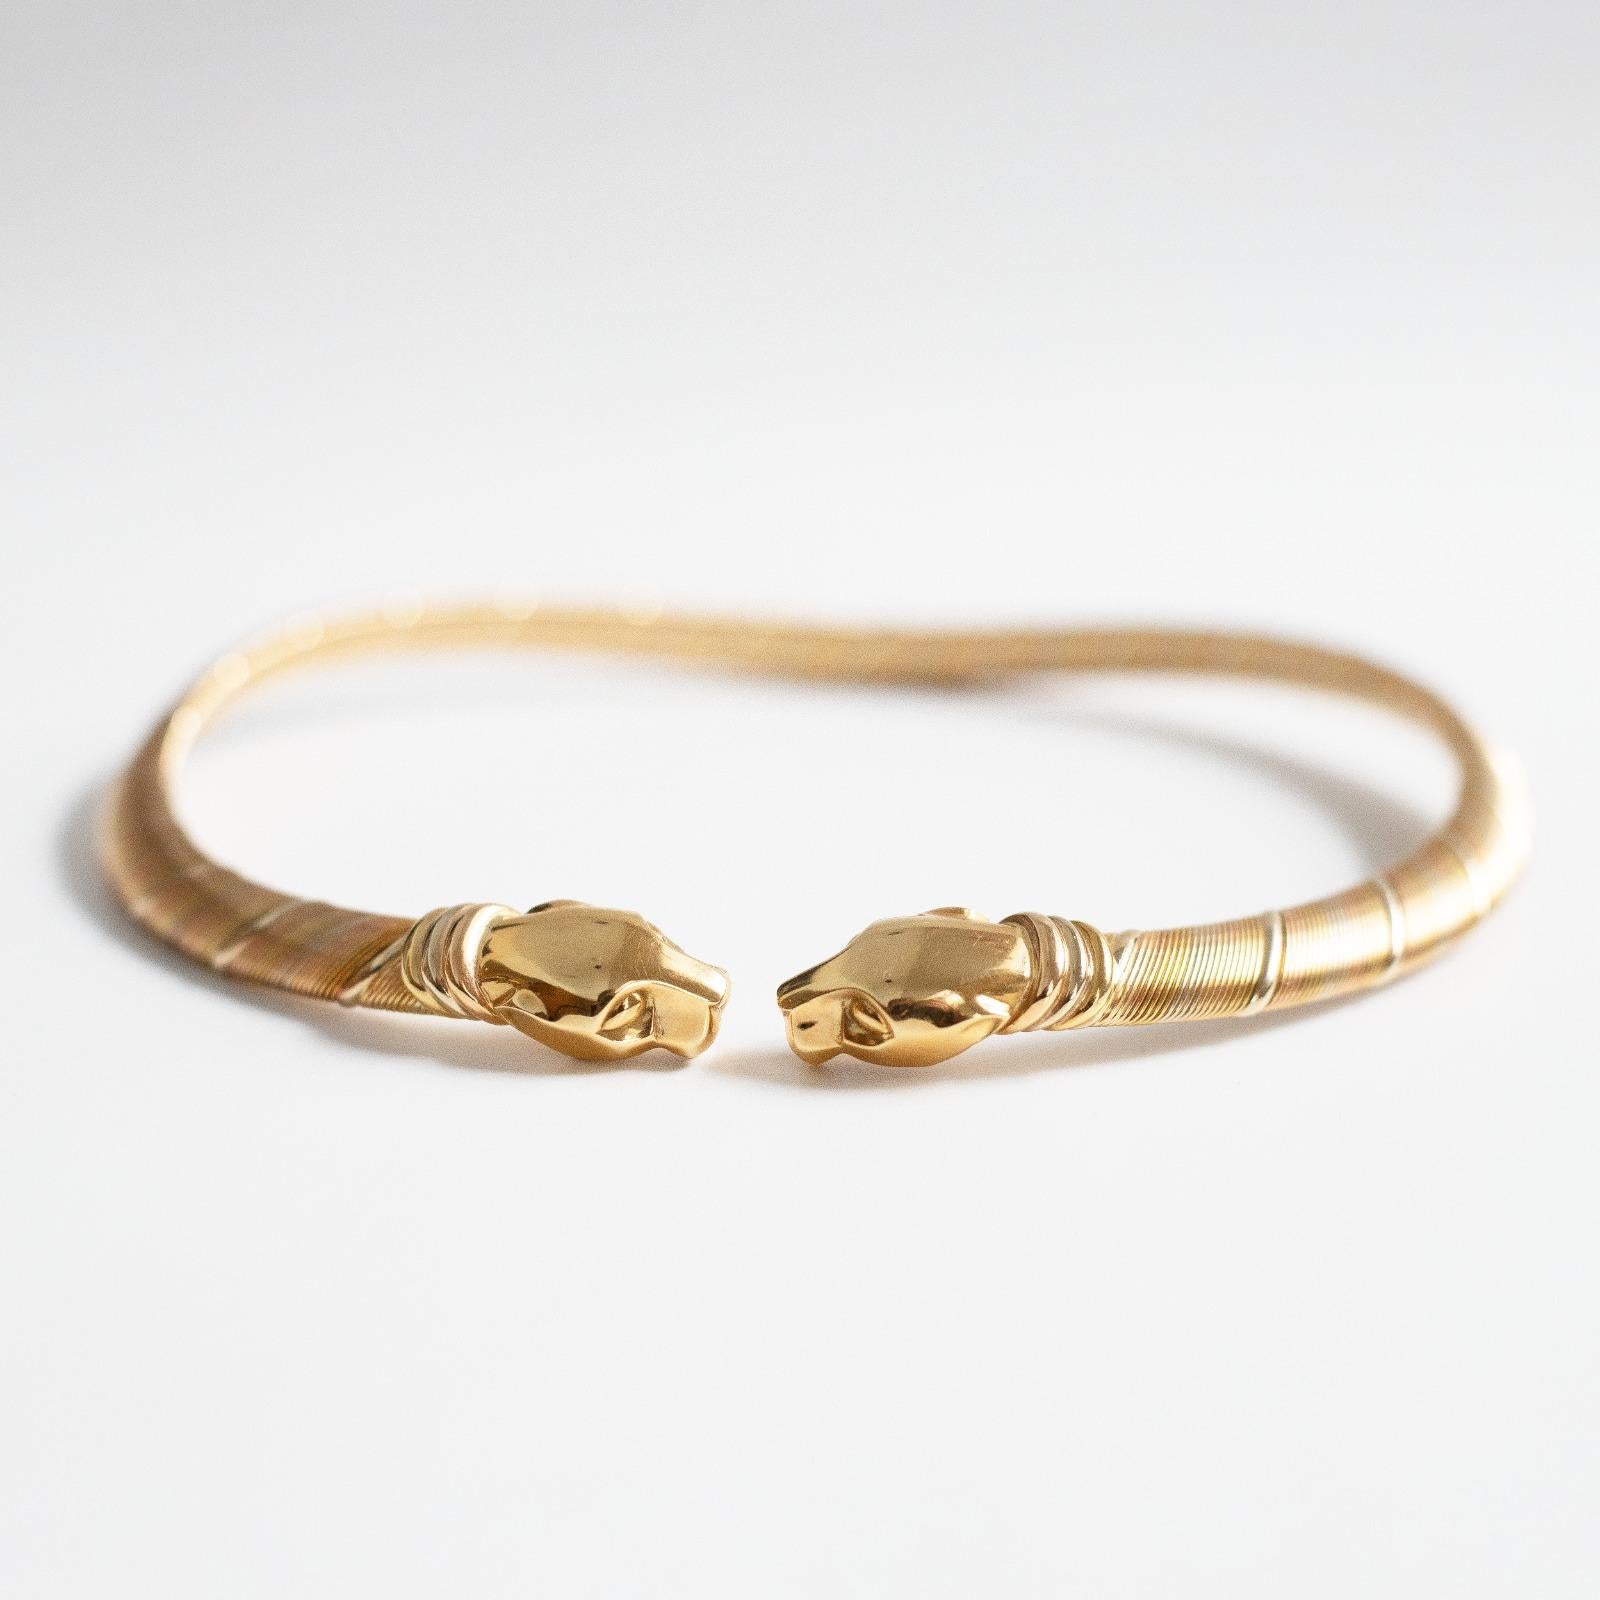 Cartier Panthère Halskette aus dreifarbigem 18-karätigem Gold. 

Diese wunderschöne strukturierte Halskette aus den 1990er Jahren ist als offener Kragen geformt und besteht aus abwechselnden Strängen aus Gelb-, Weiß- und Roségold über einem Kern aus